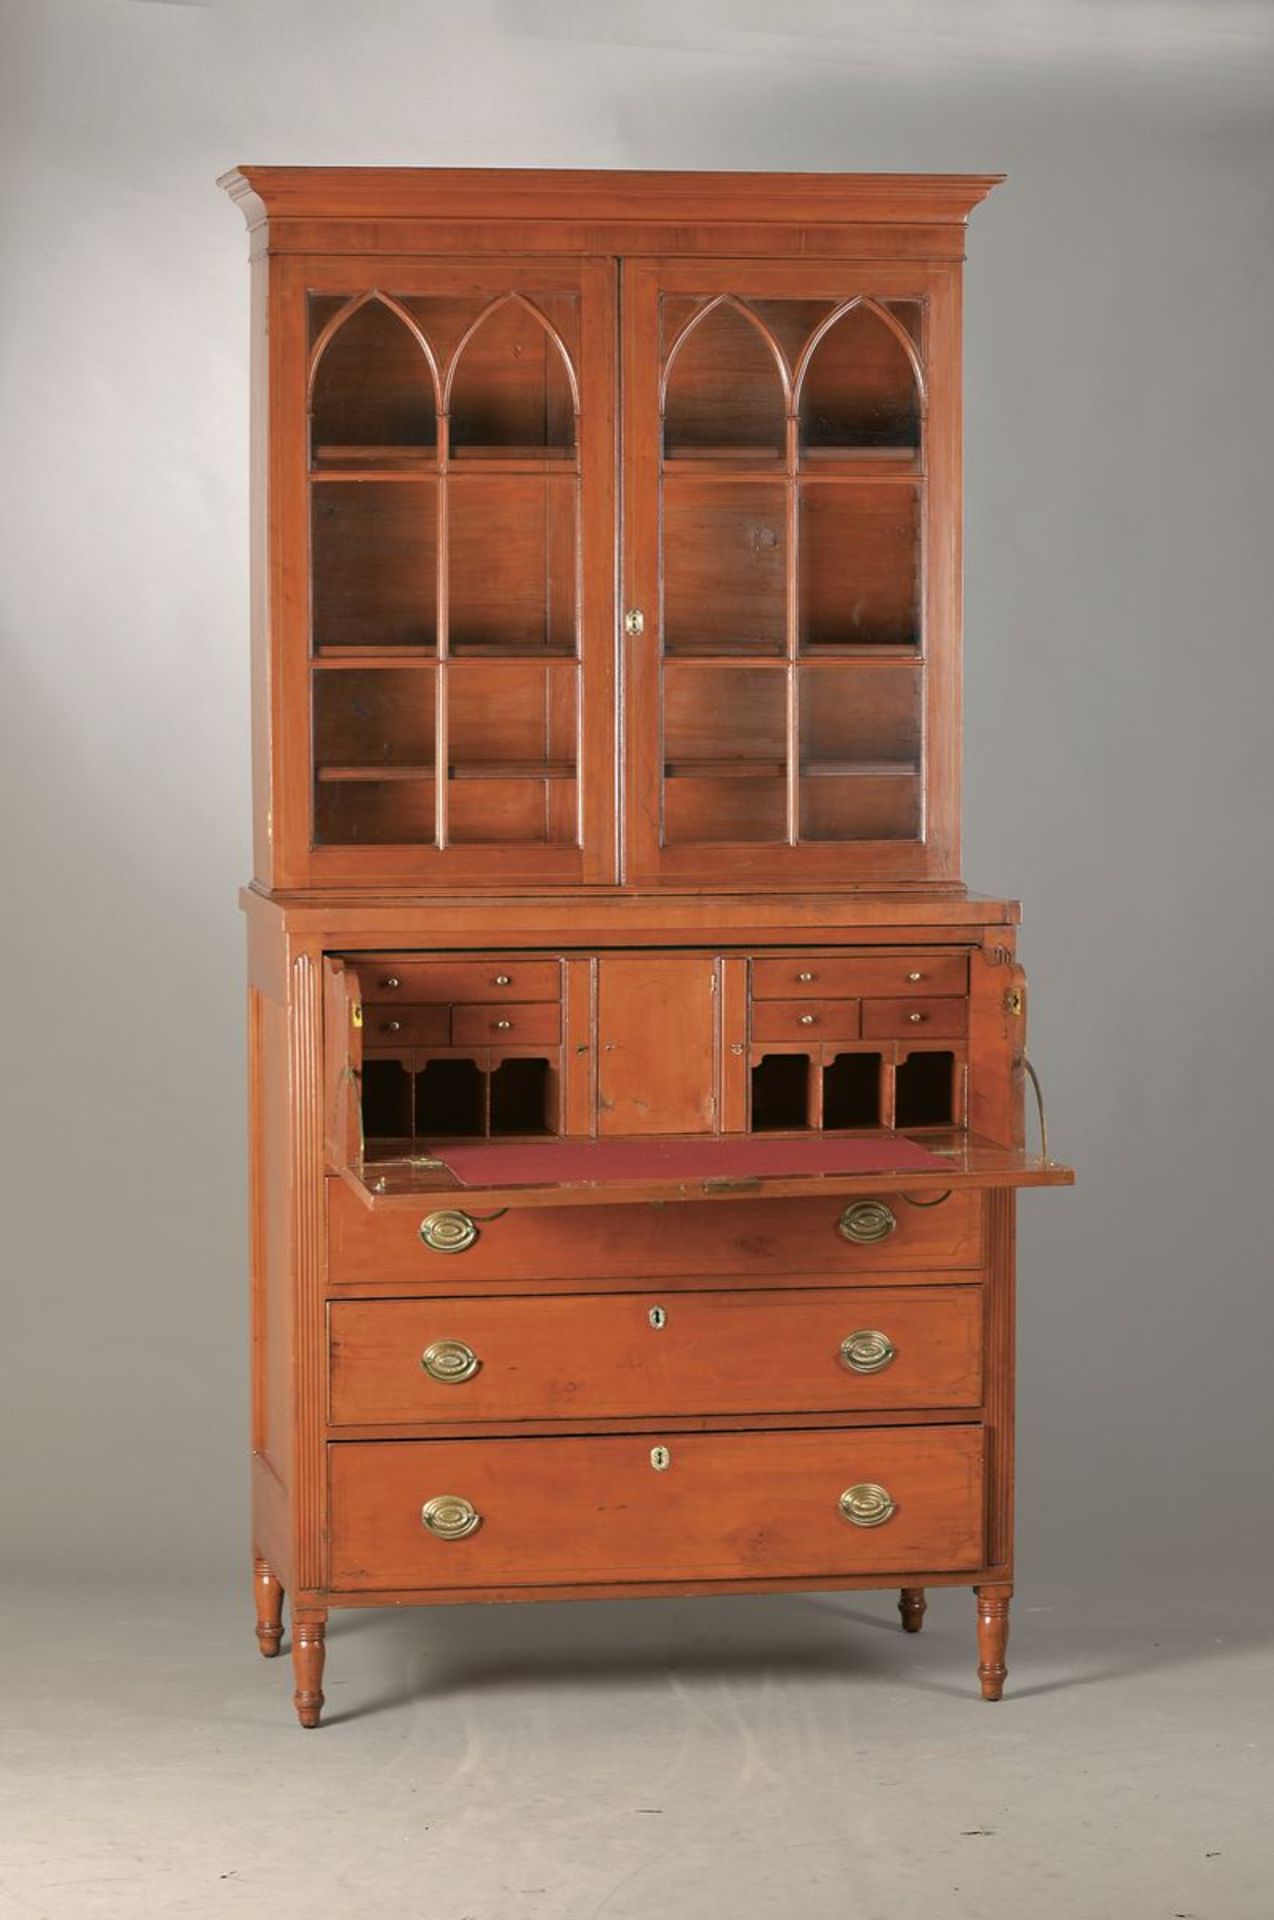 Schreibmöbel mit Vitrinenaufsatz/Sekretär, England, um 1840, Kirschbaum meist massiv, verglaster